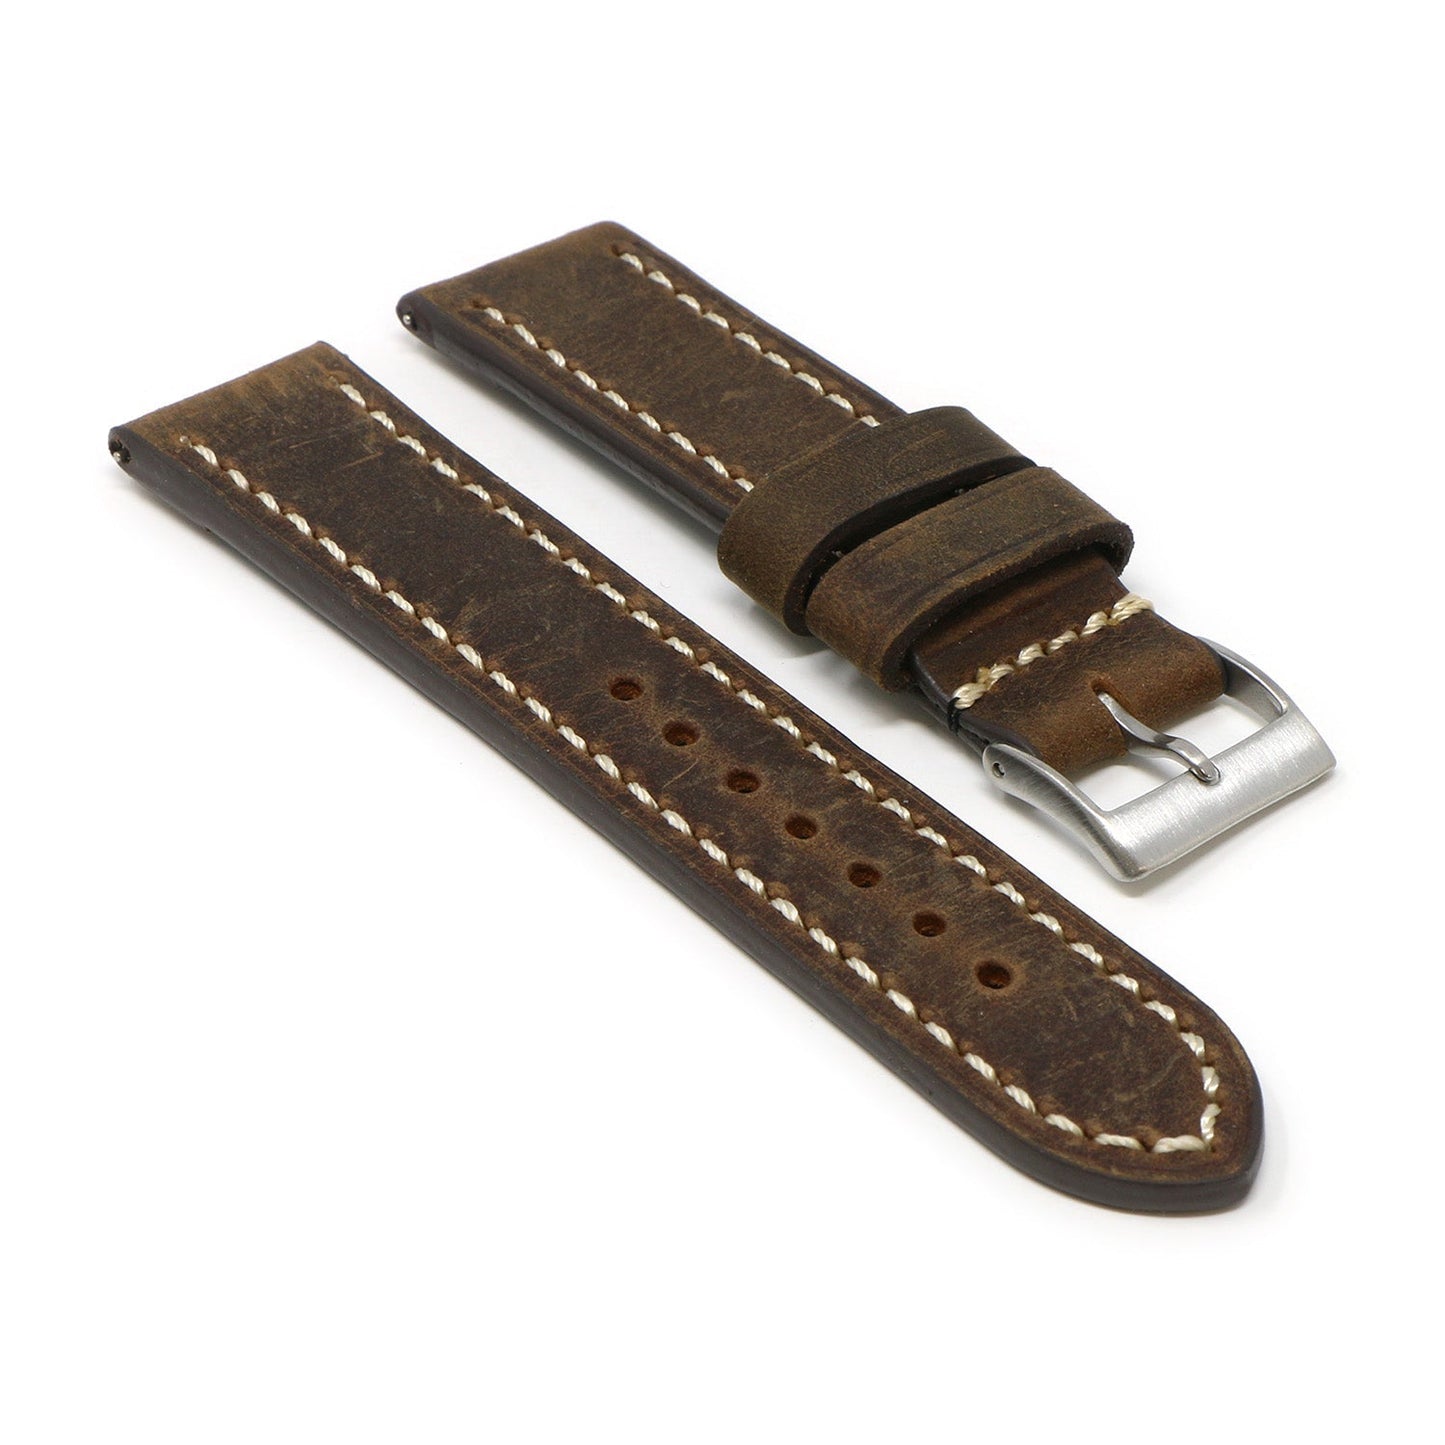 18mm Vintage Leather Strap (Short, Standard, Extra Long)